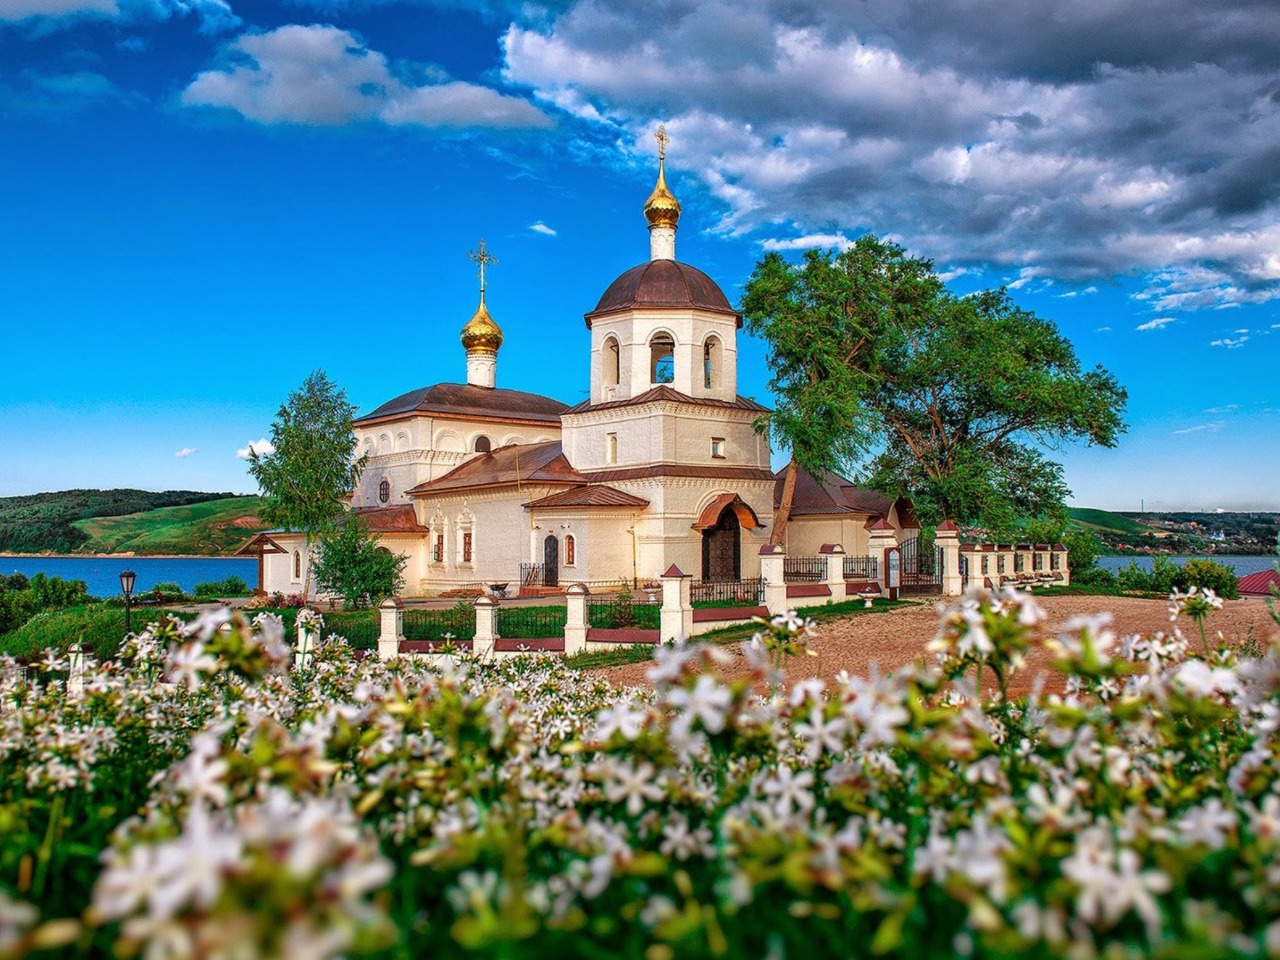 Свияжск и Раифский монастырь + Храм всех религий | Цена 2400₽, отзывы, описание экскурсии